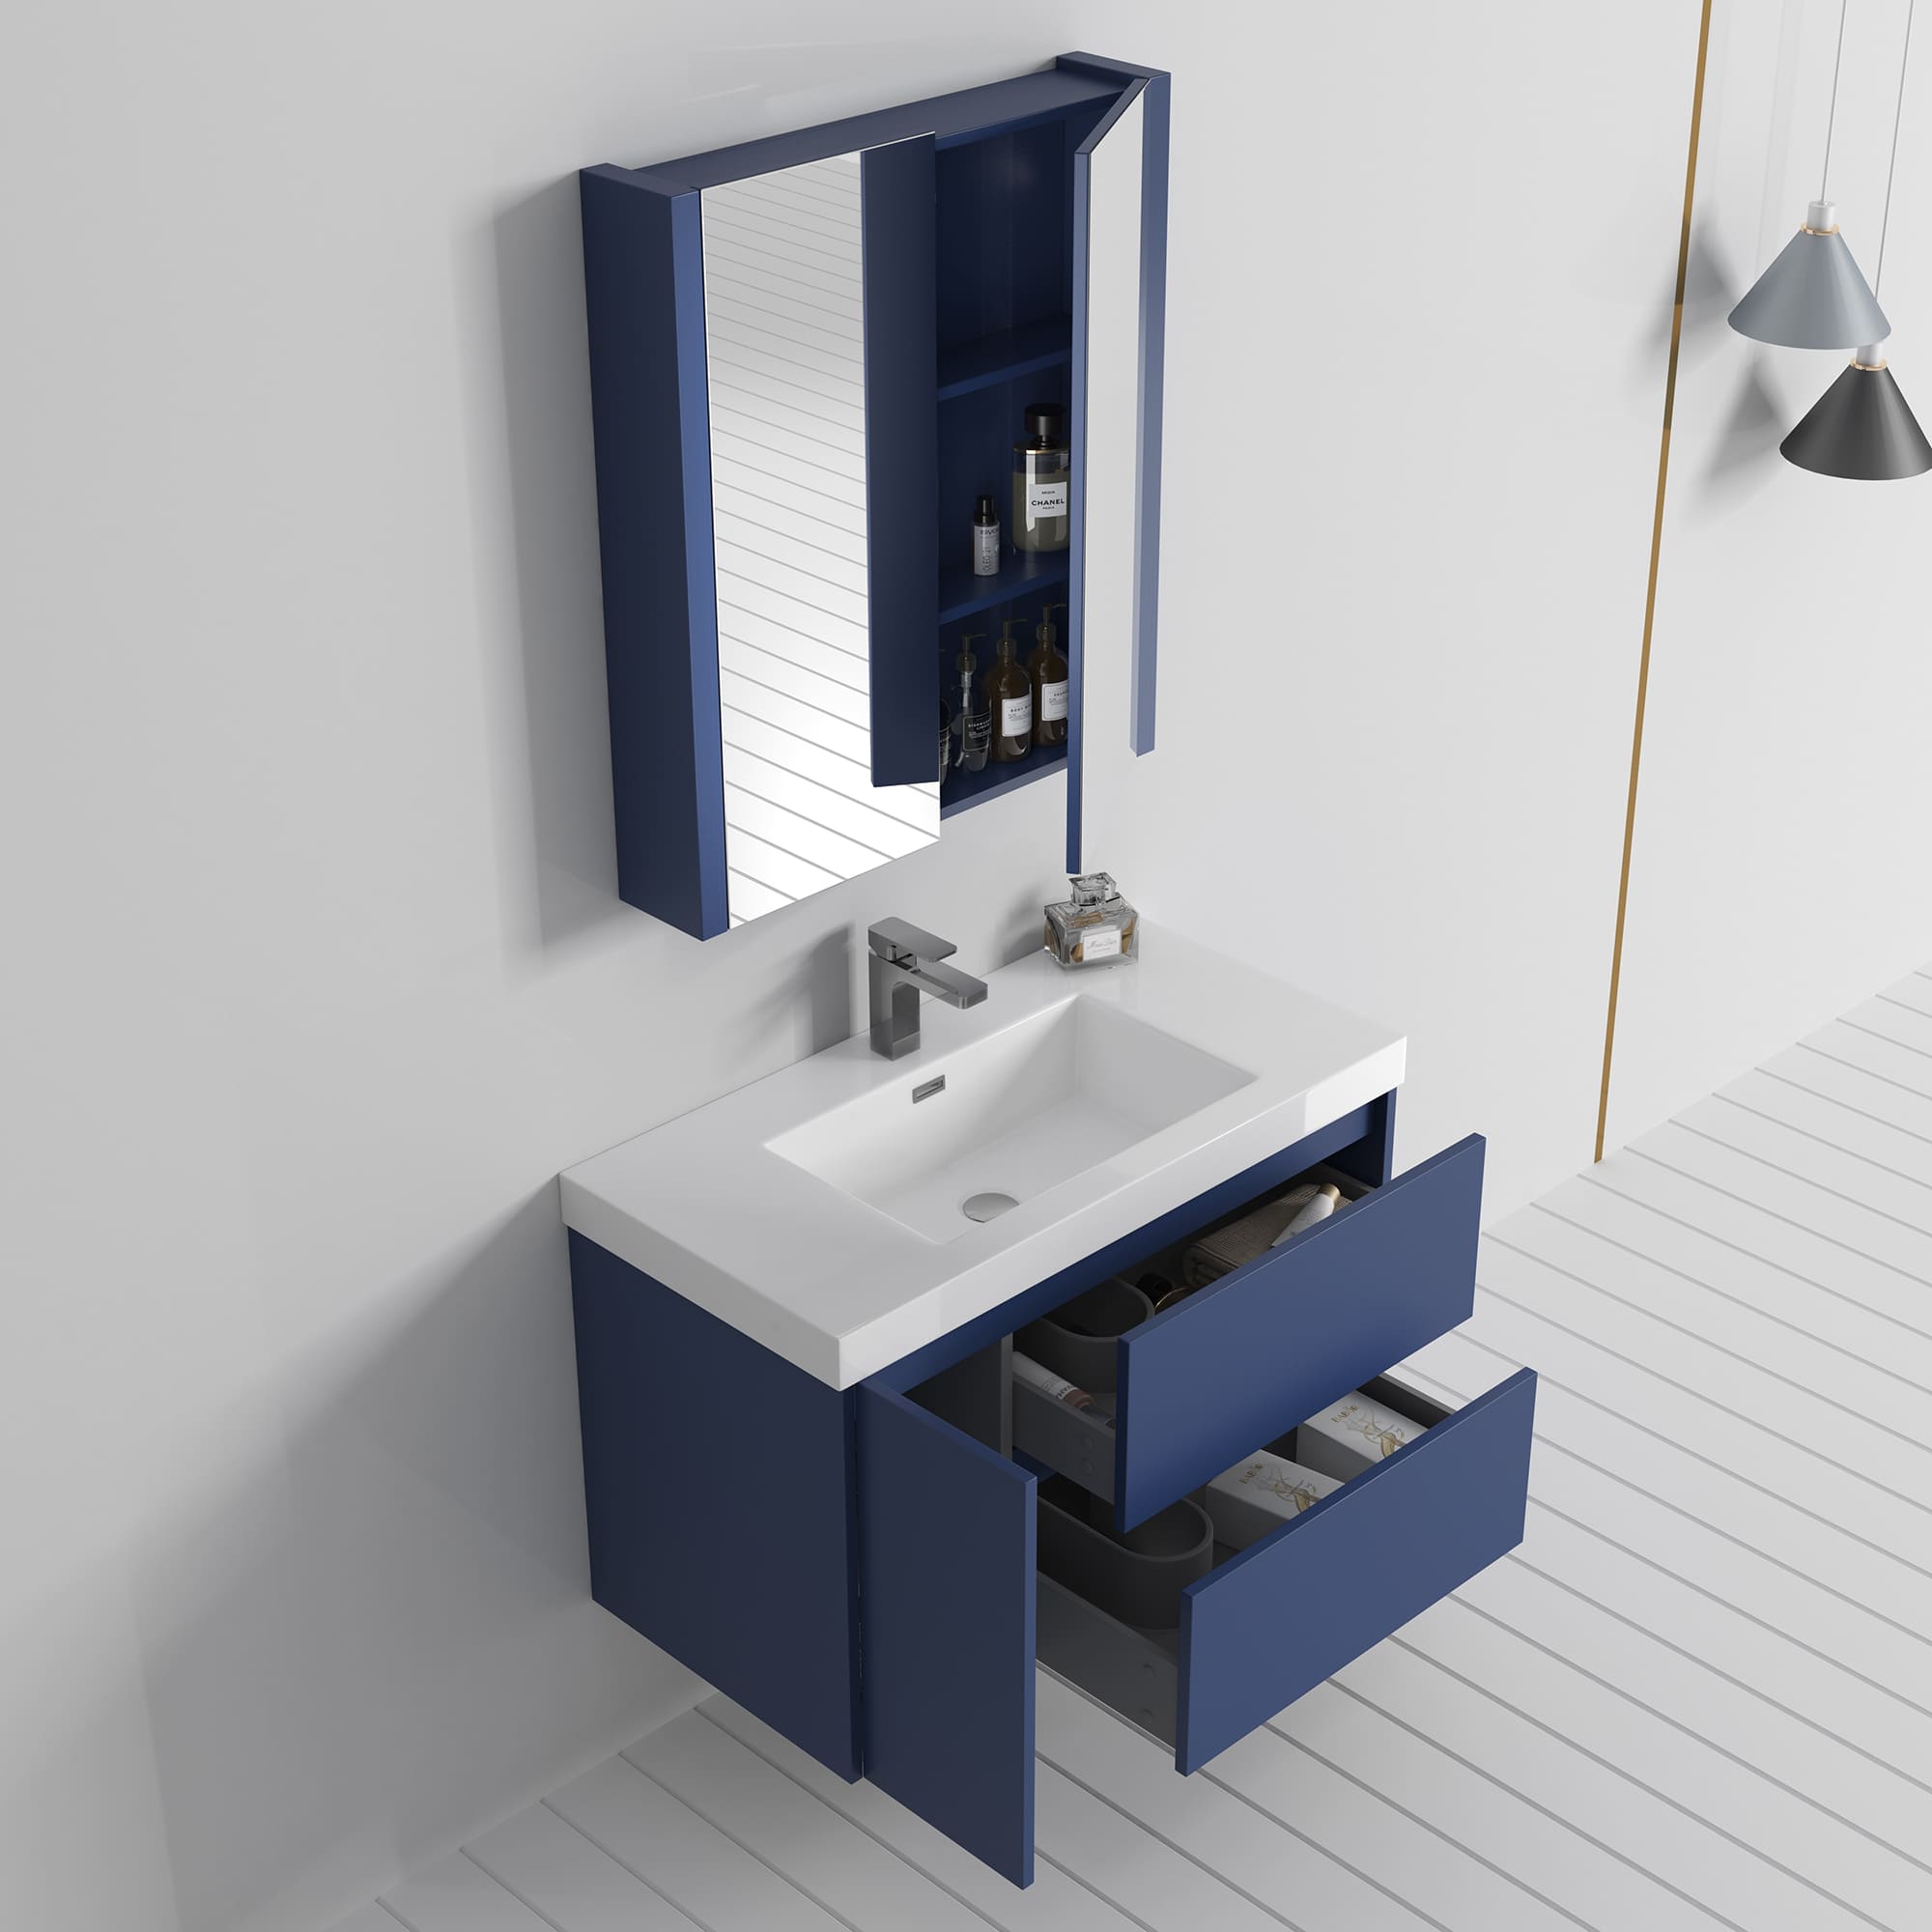 Valencia 36" Bathroom Vanity  #size_36"  #color_navy blue